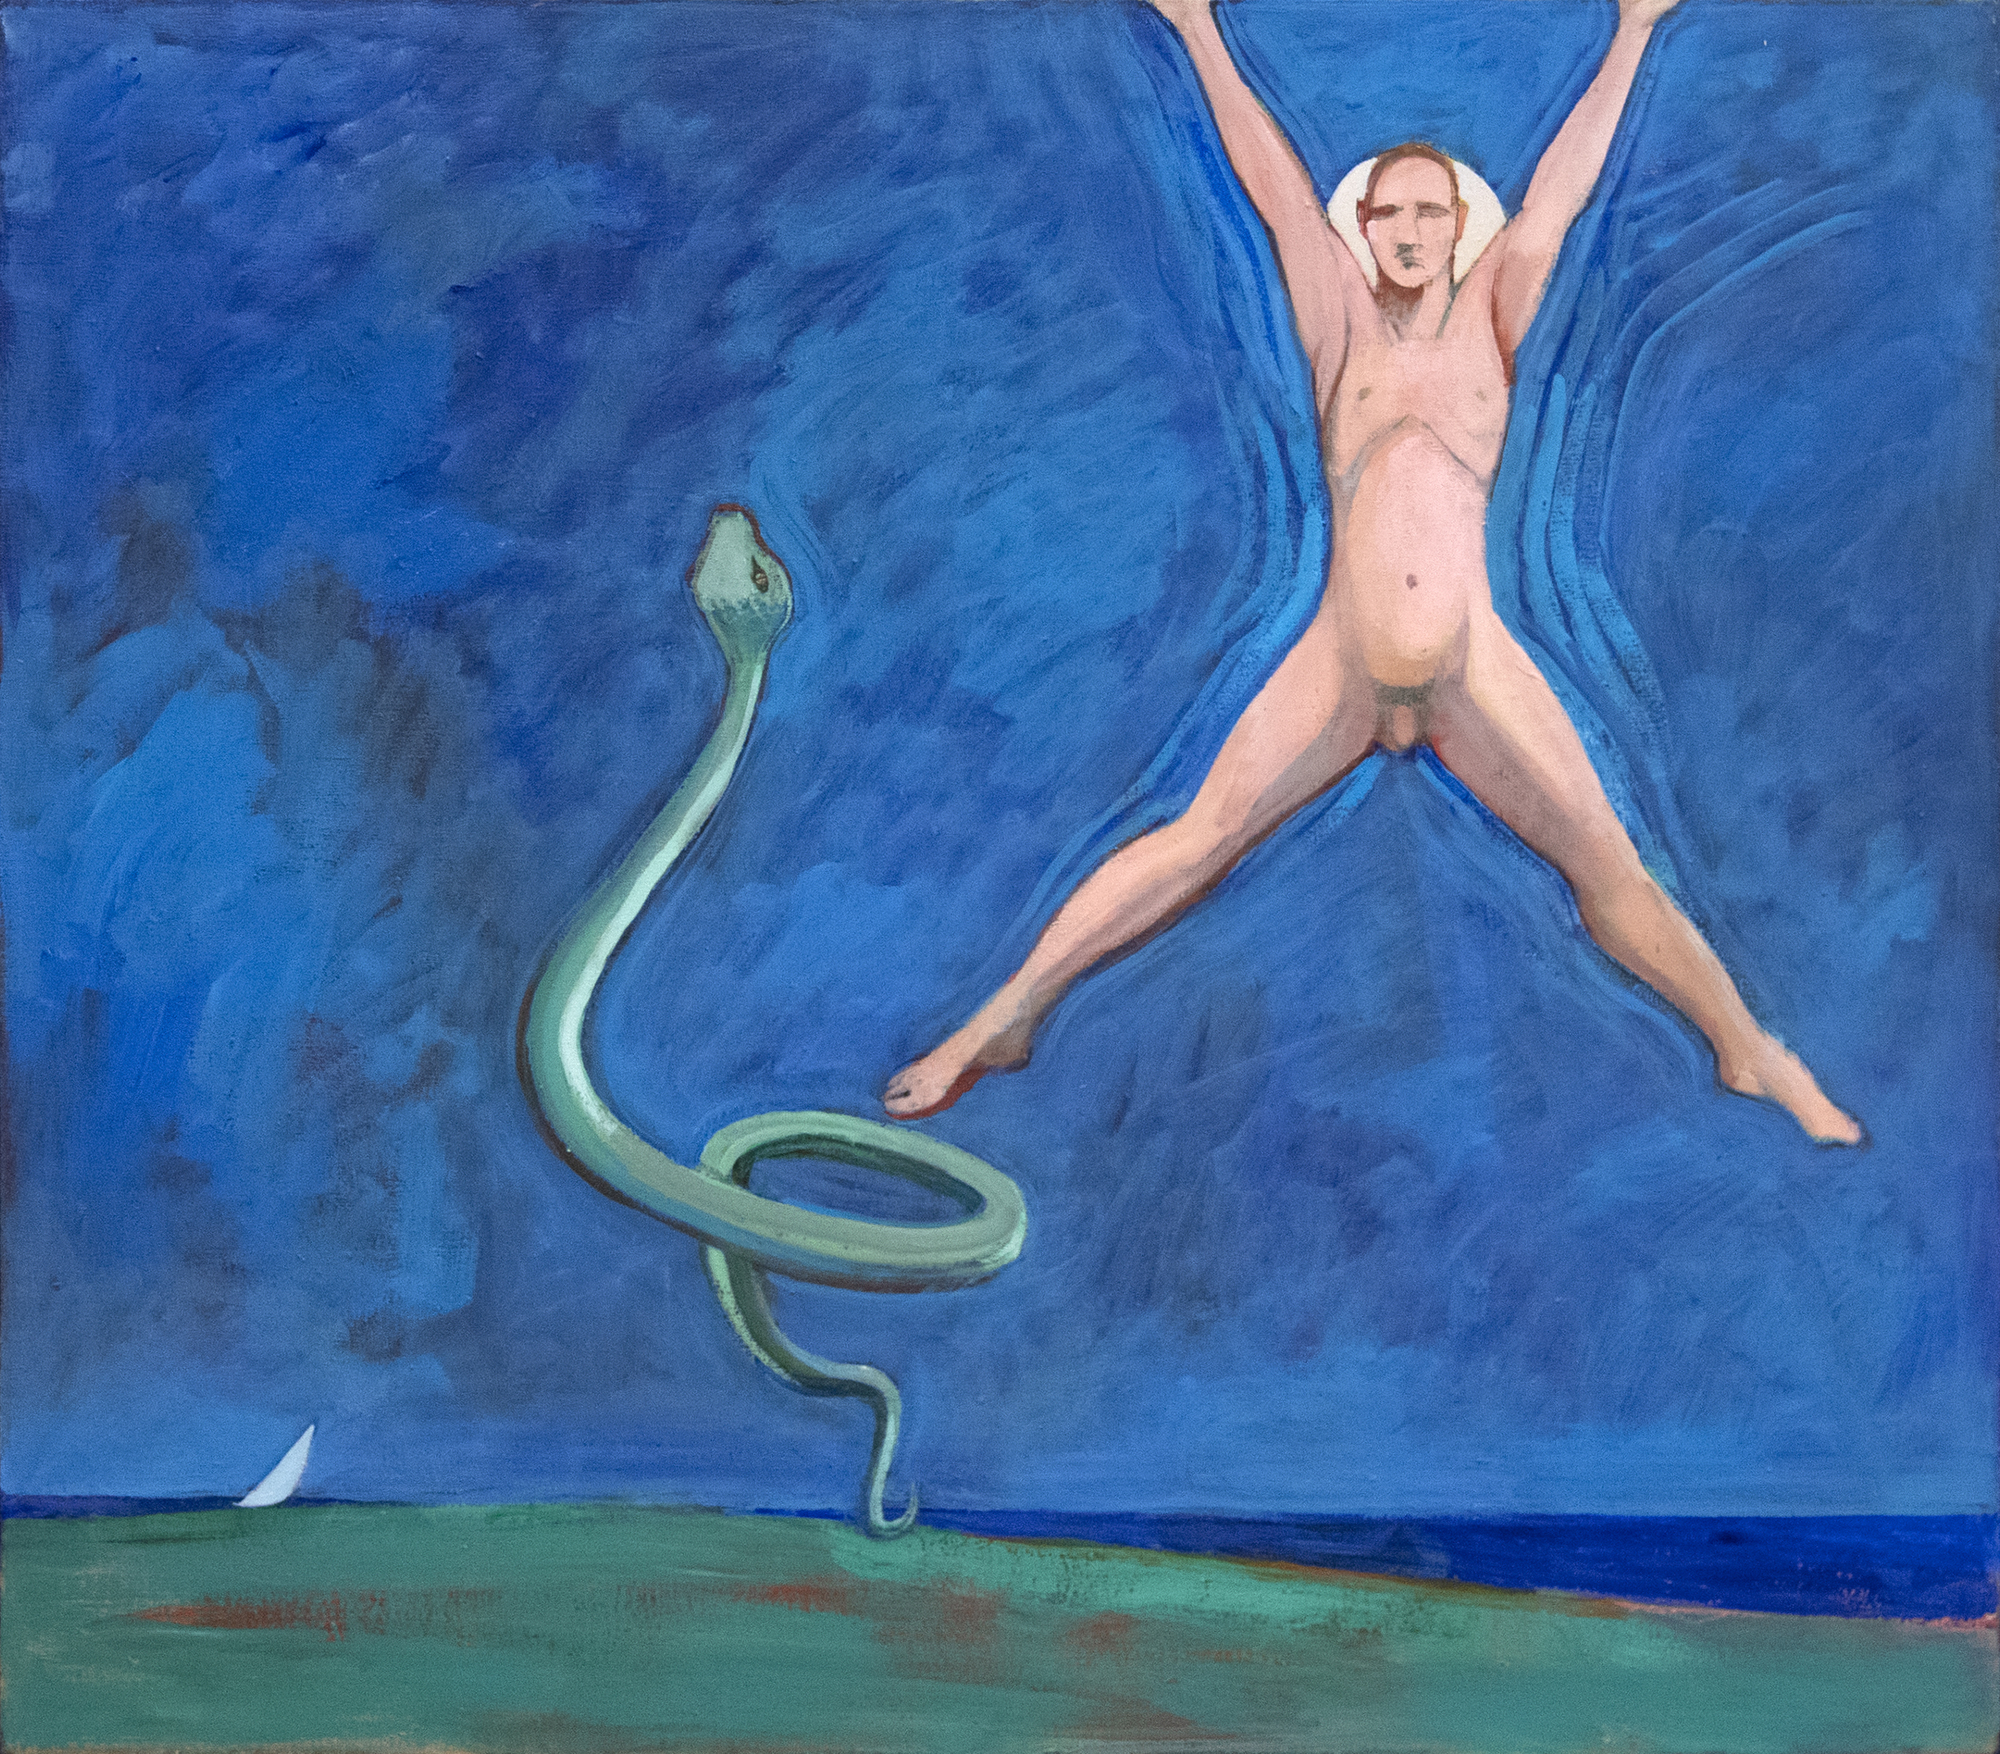 WILLIAM THEOPHILUS BROWN - Sin título (Pintura con hombre saltador y serpiente) - acrílico sobre lienzo - 38 x 42 in.